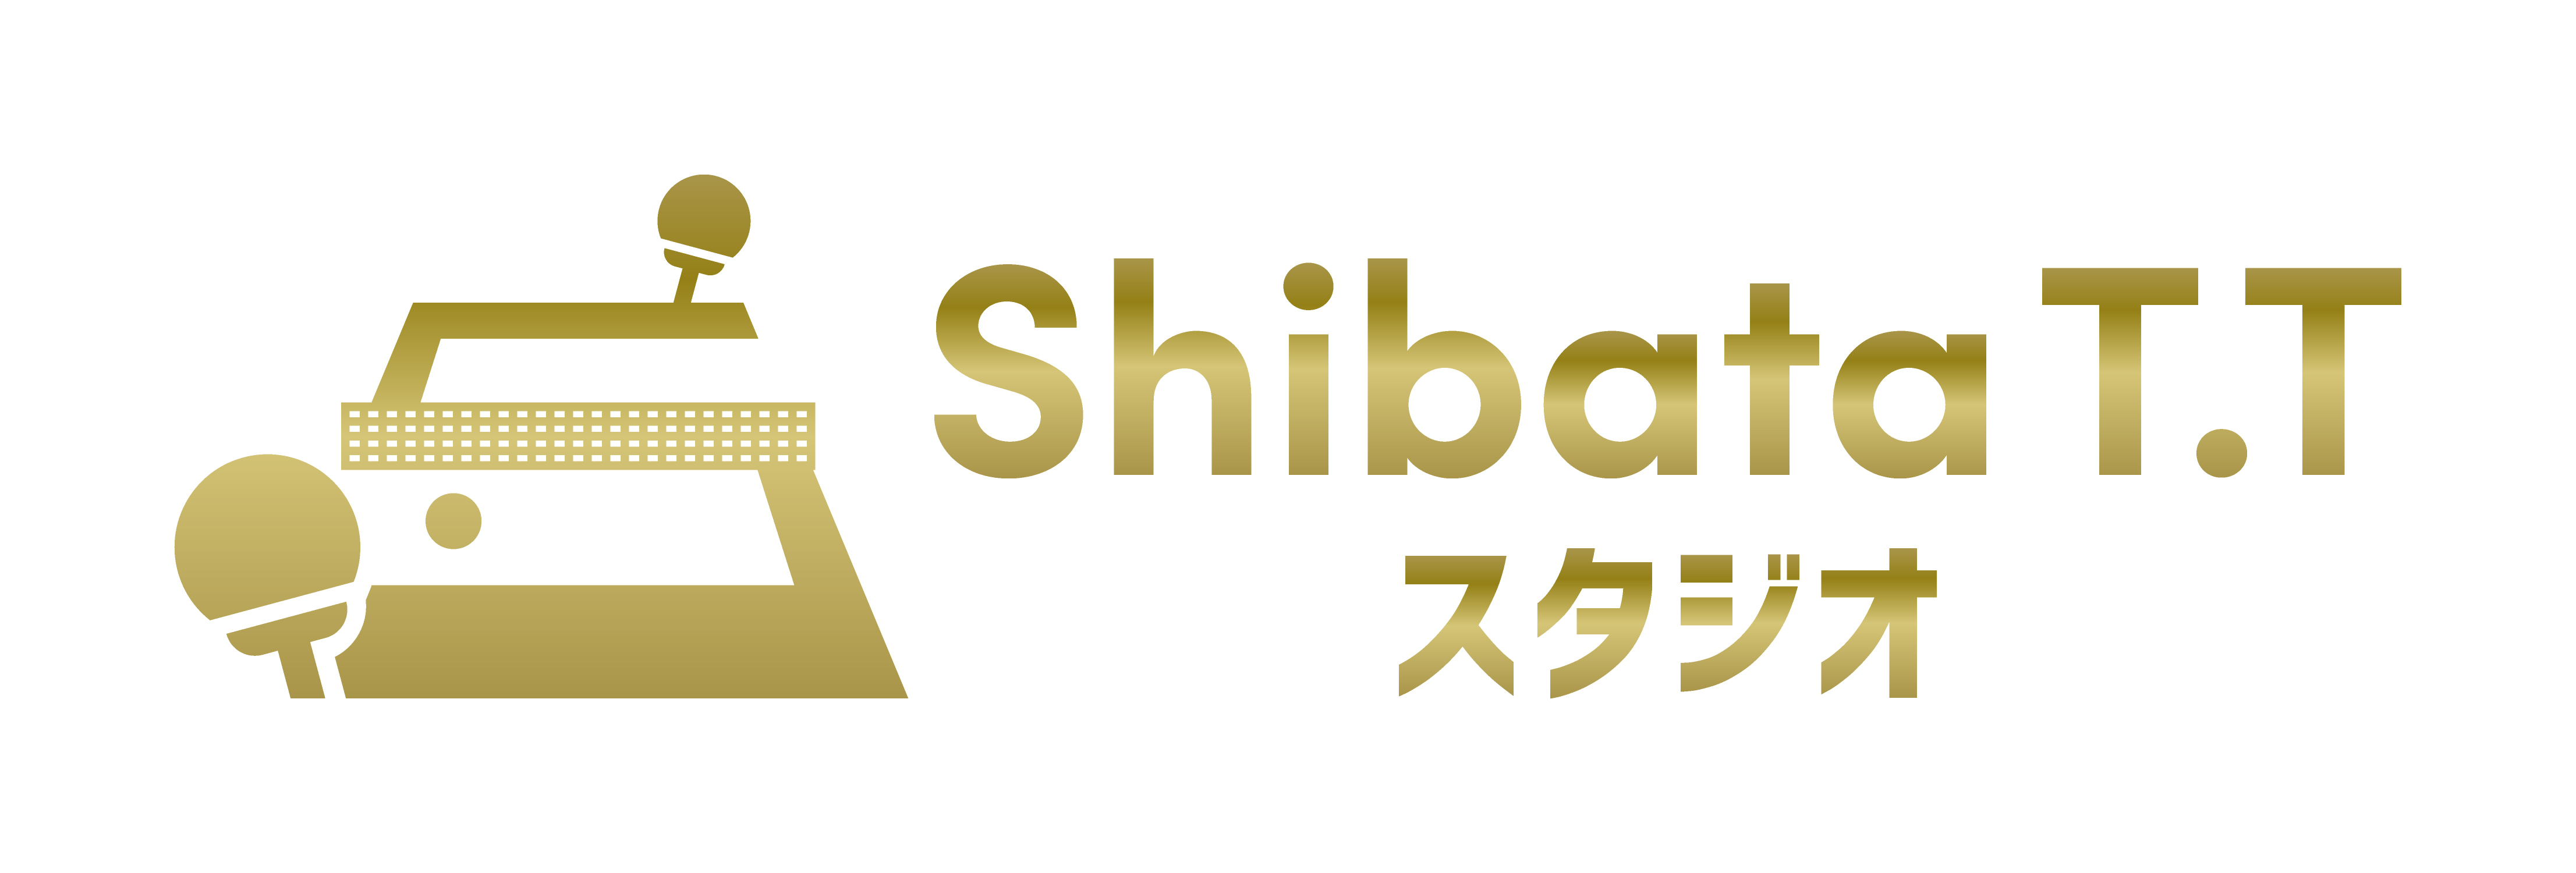 愛媛県松山市の卓球スクール・卓球場『ShibataT.Tスタジオ』